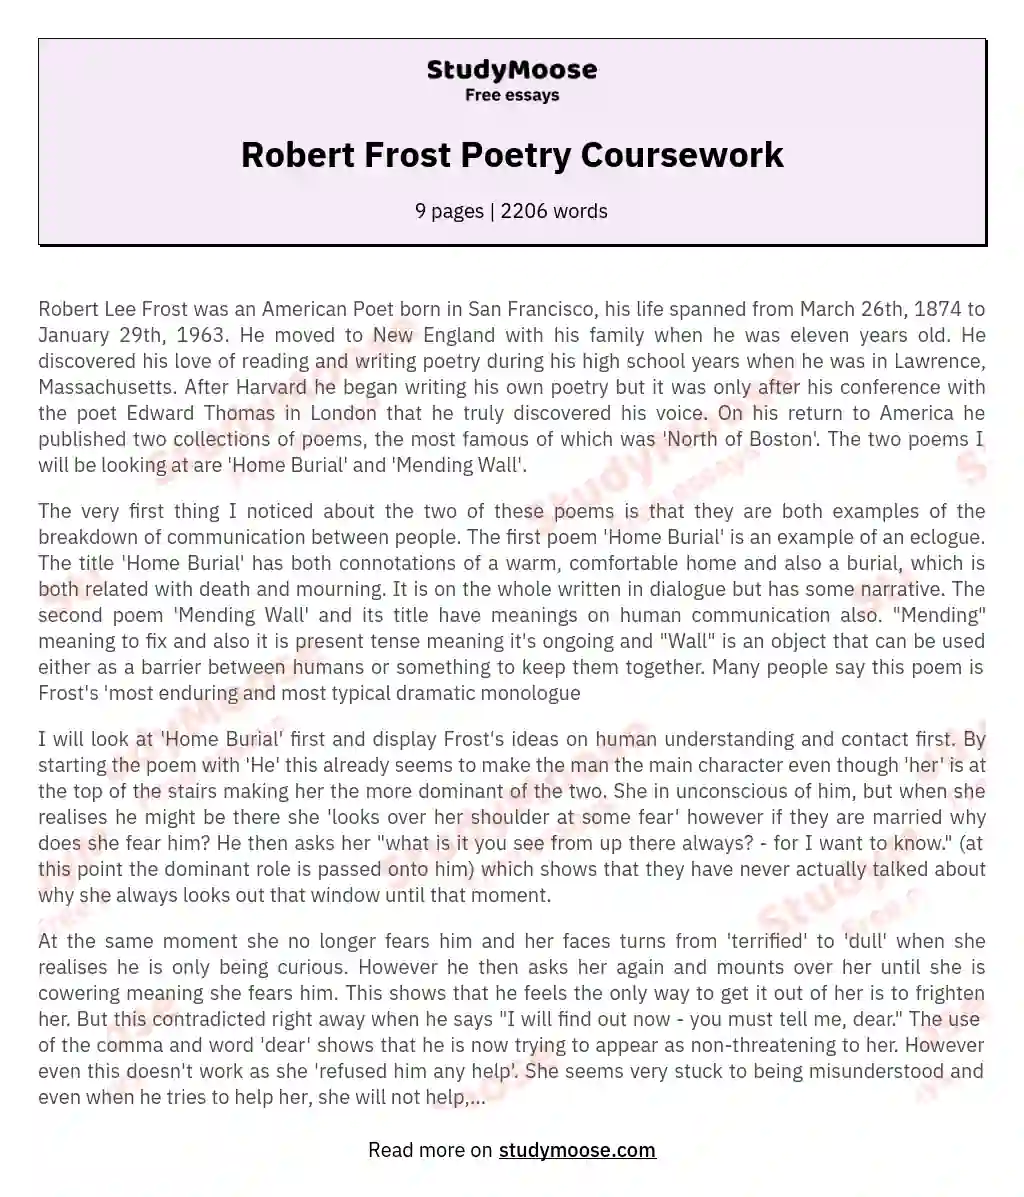 Robert Frost Poetry Coursework essay